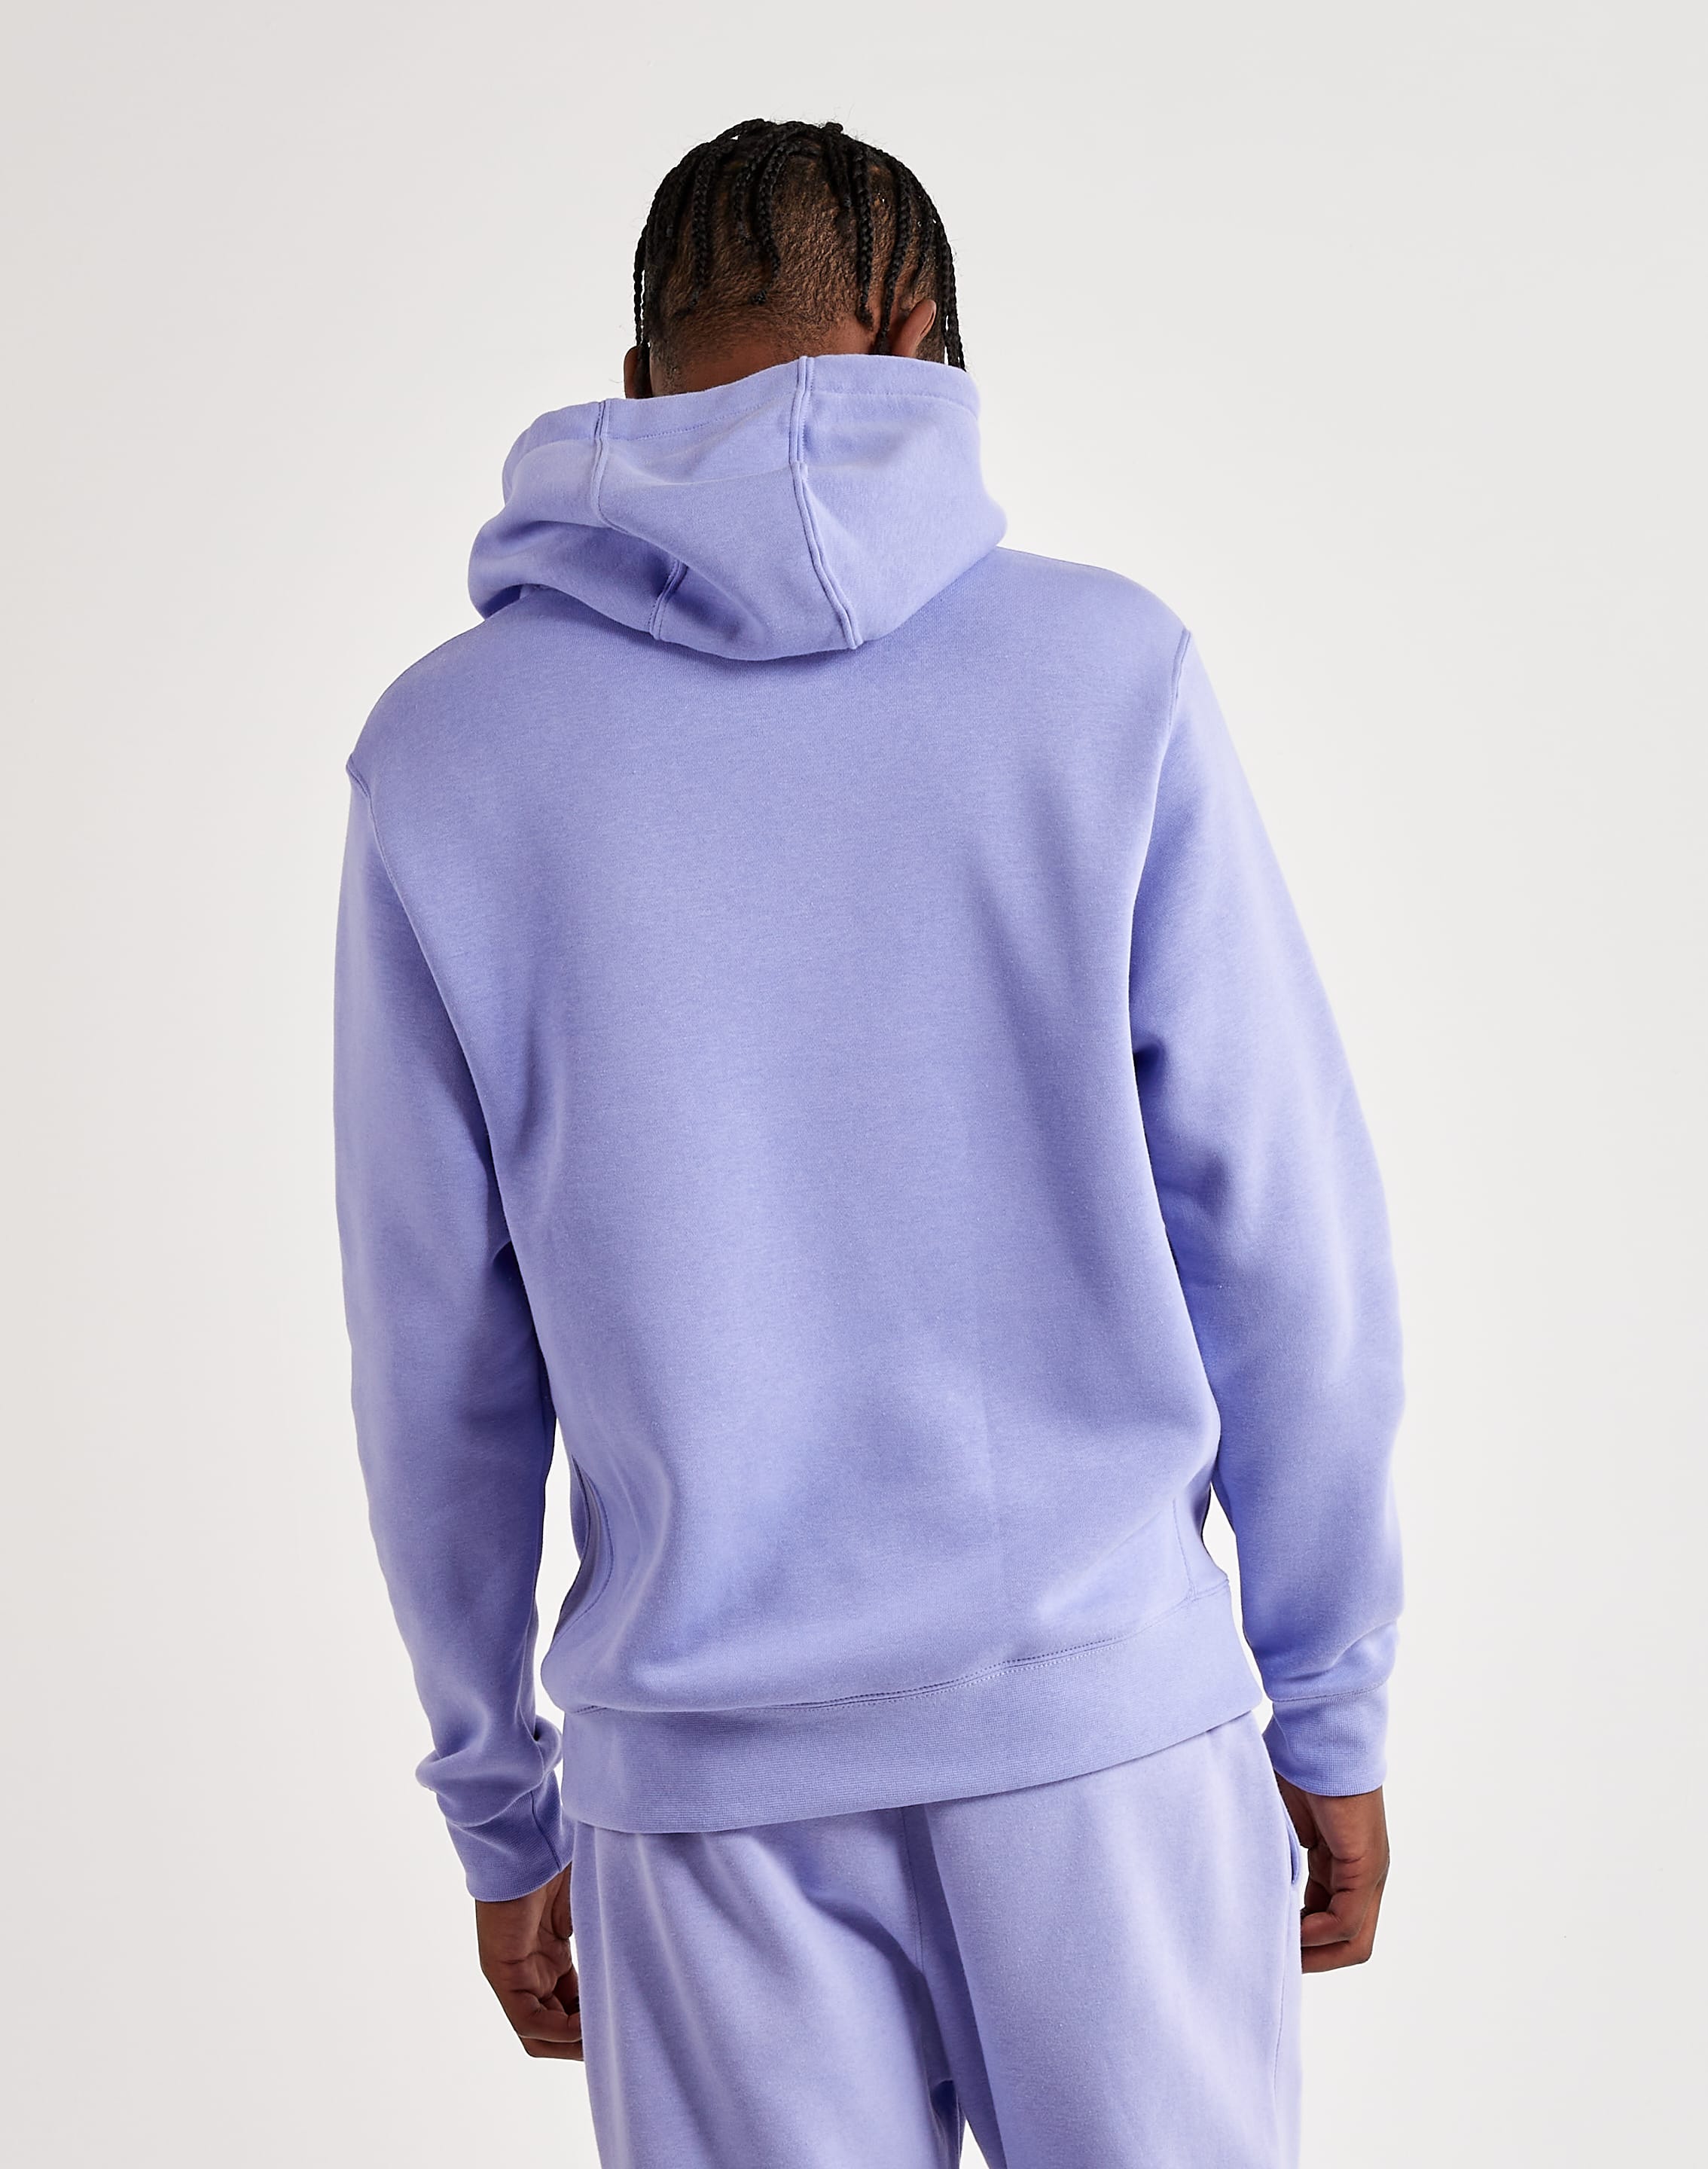 Nike Men's Sportswear Club Fleece Pullover Hoodie-Purple - Hibbett